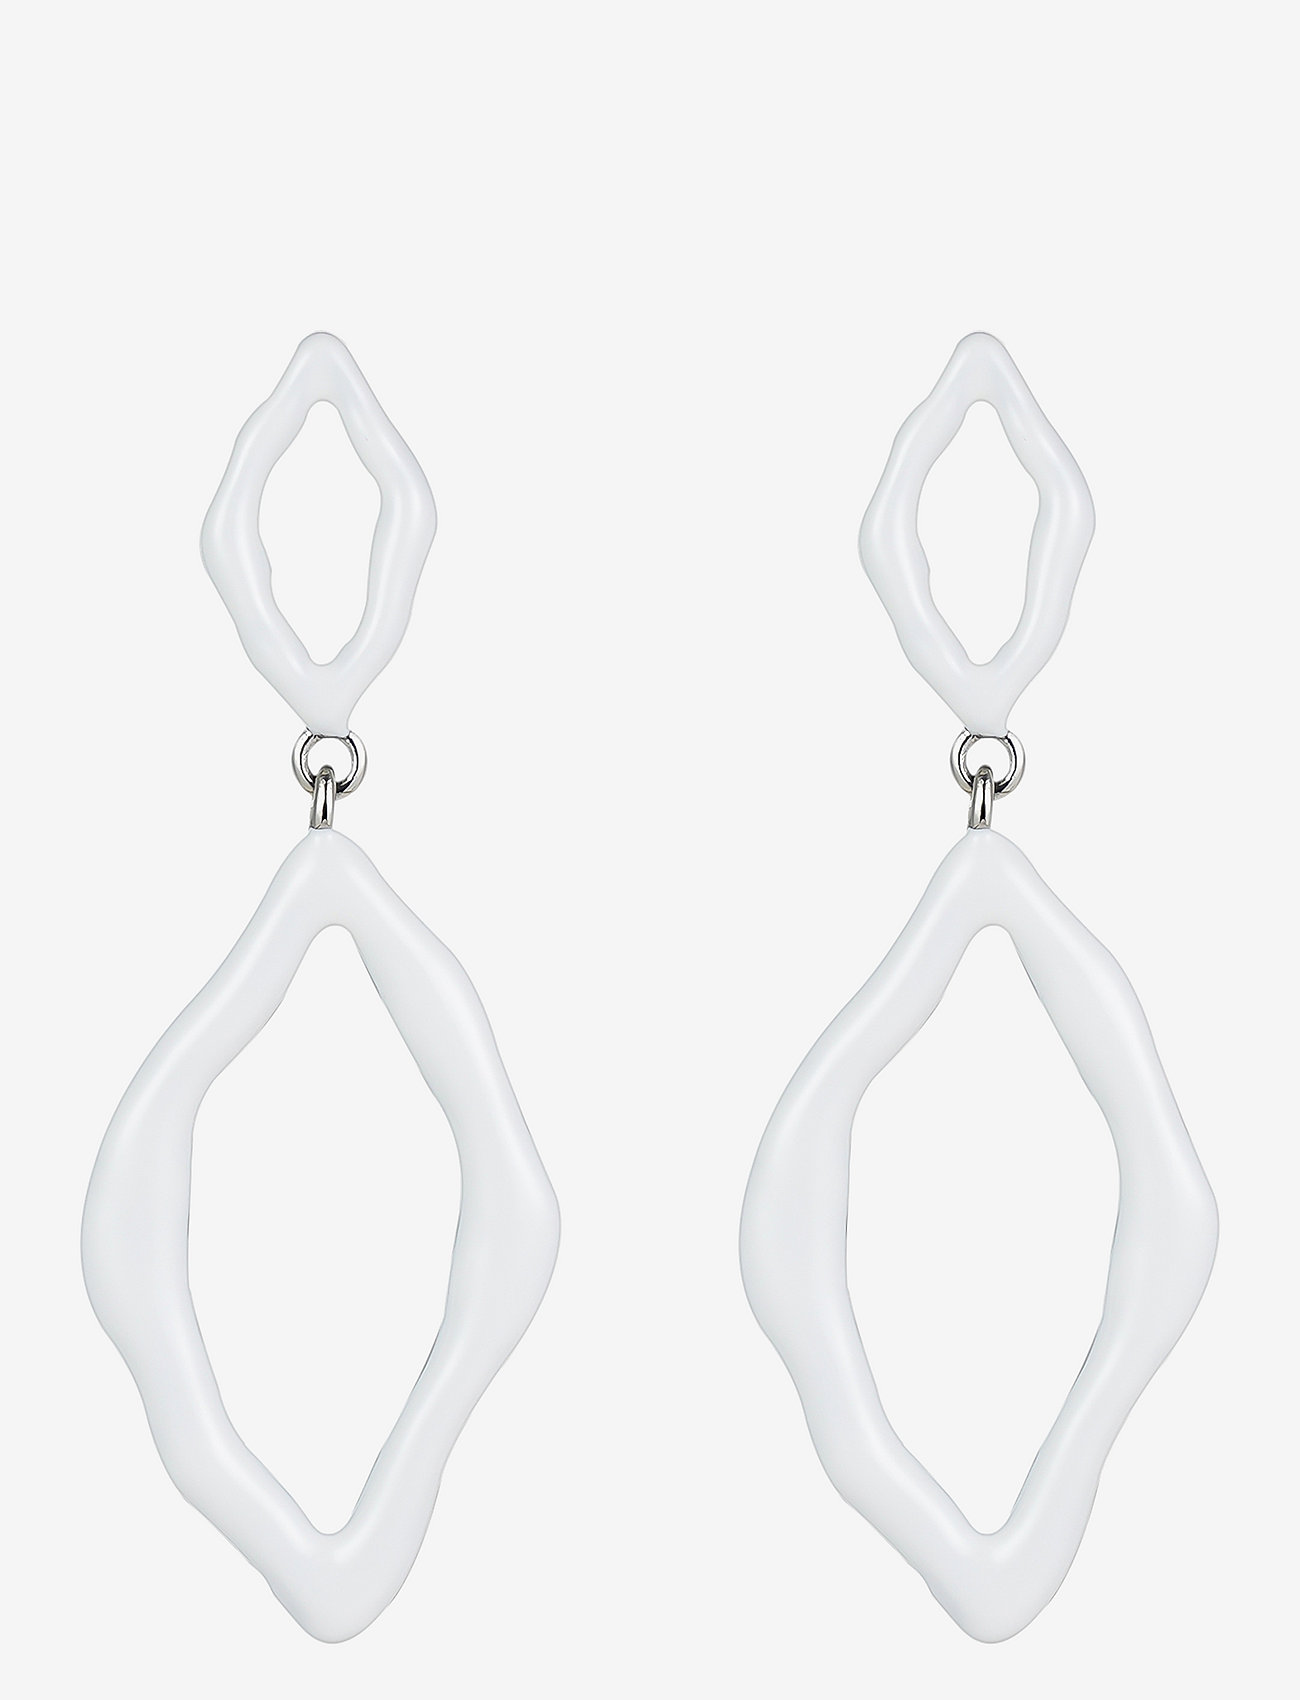 Bud to rose - Roxy Eanmel Earring White/Silver - statement earrings - silver - 0